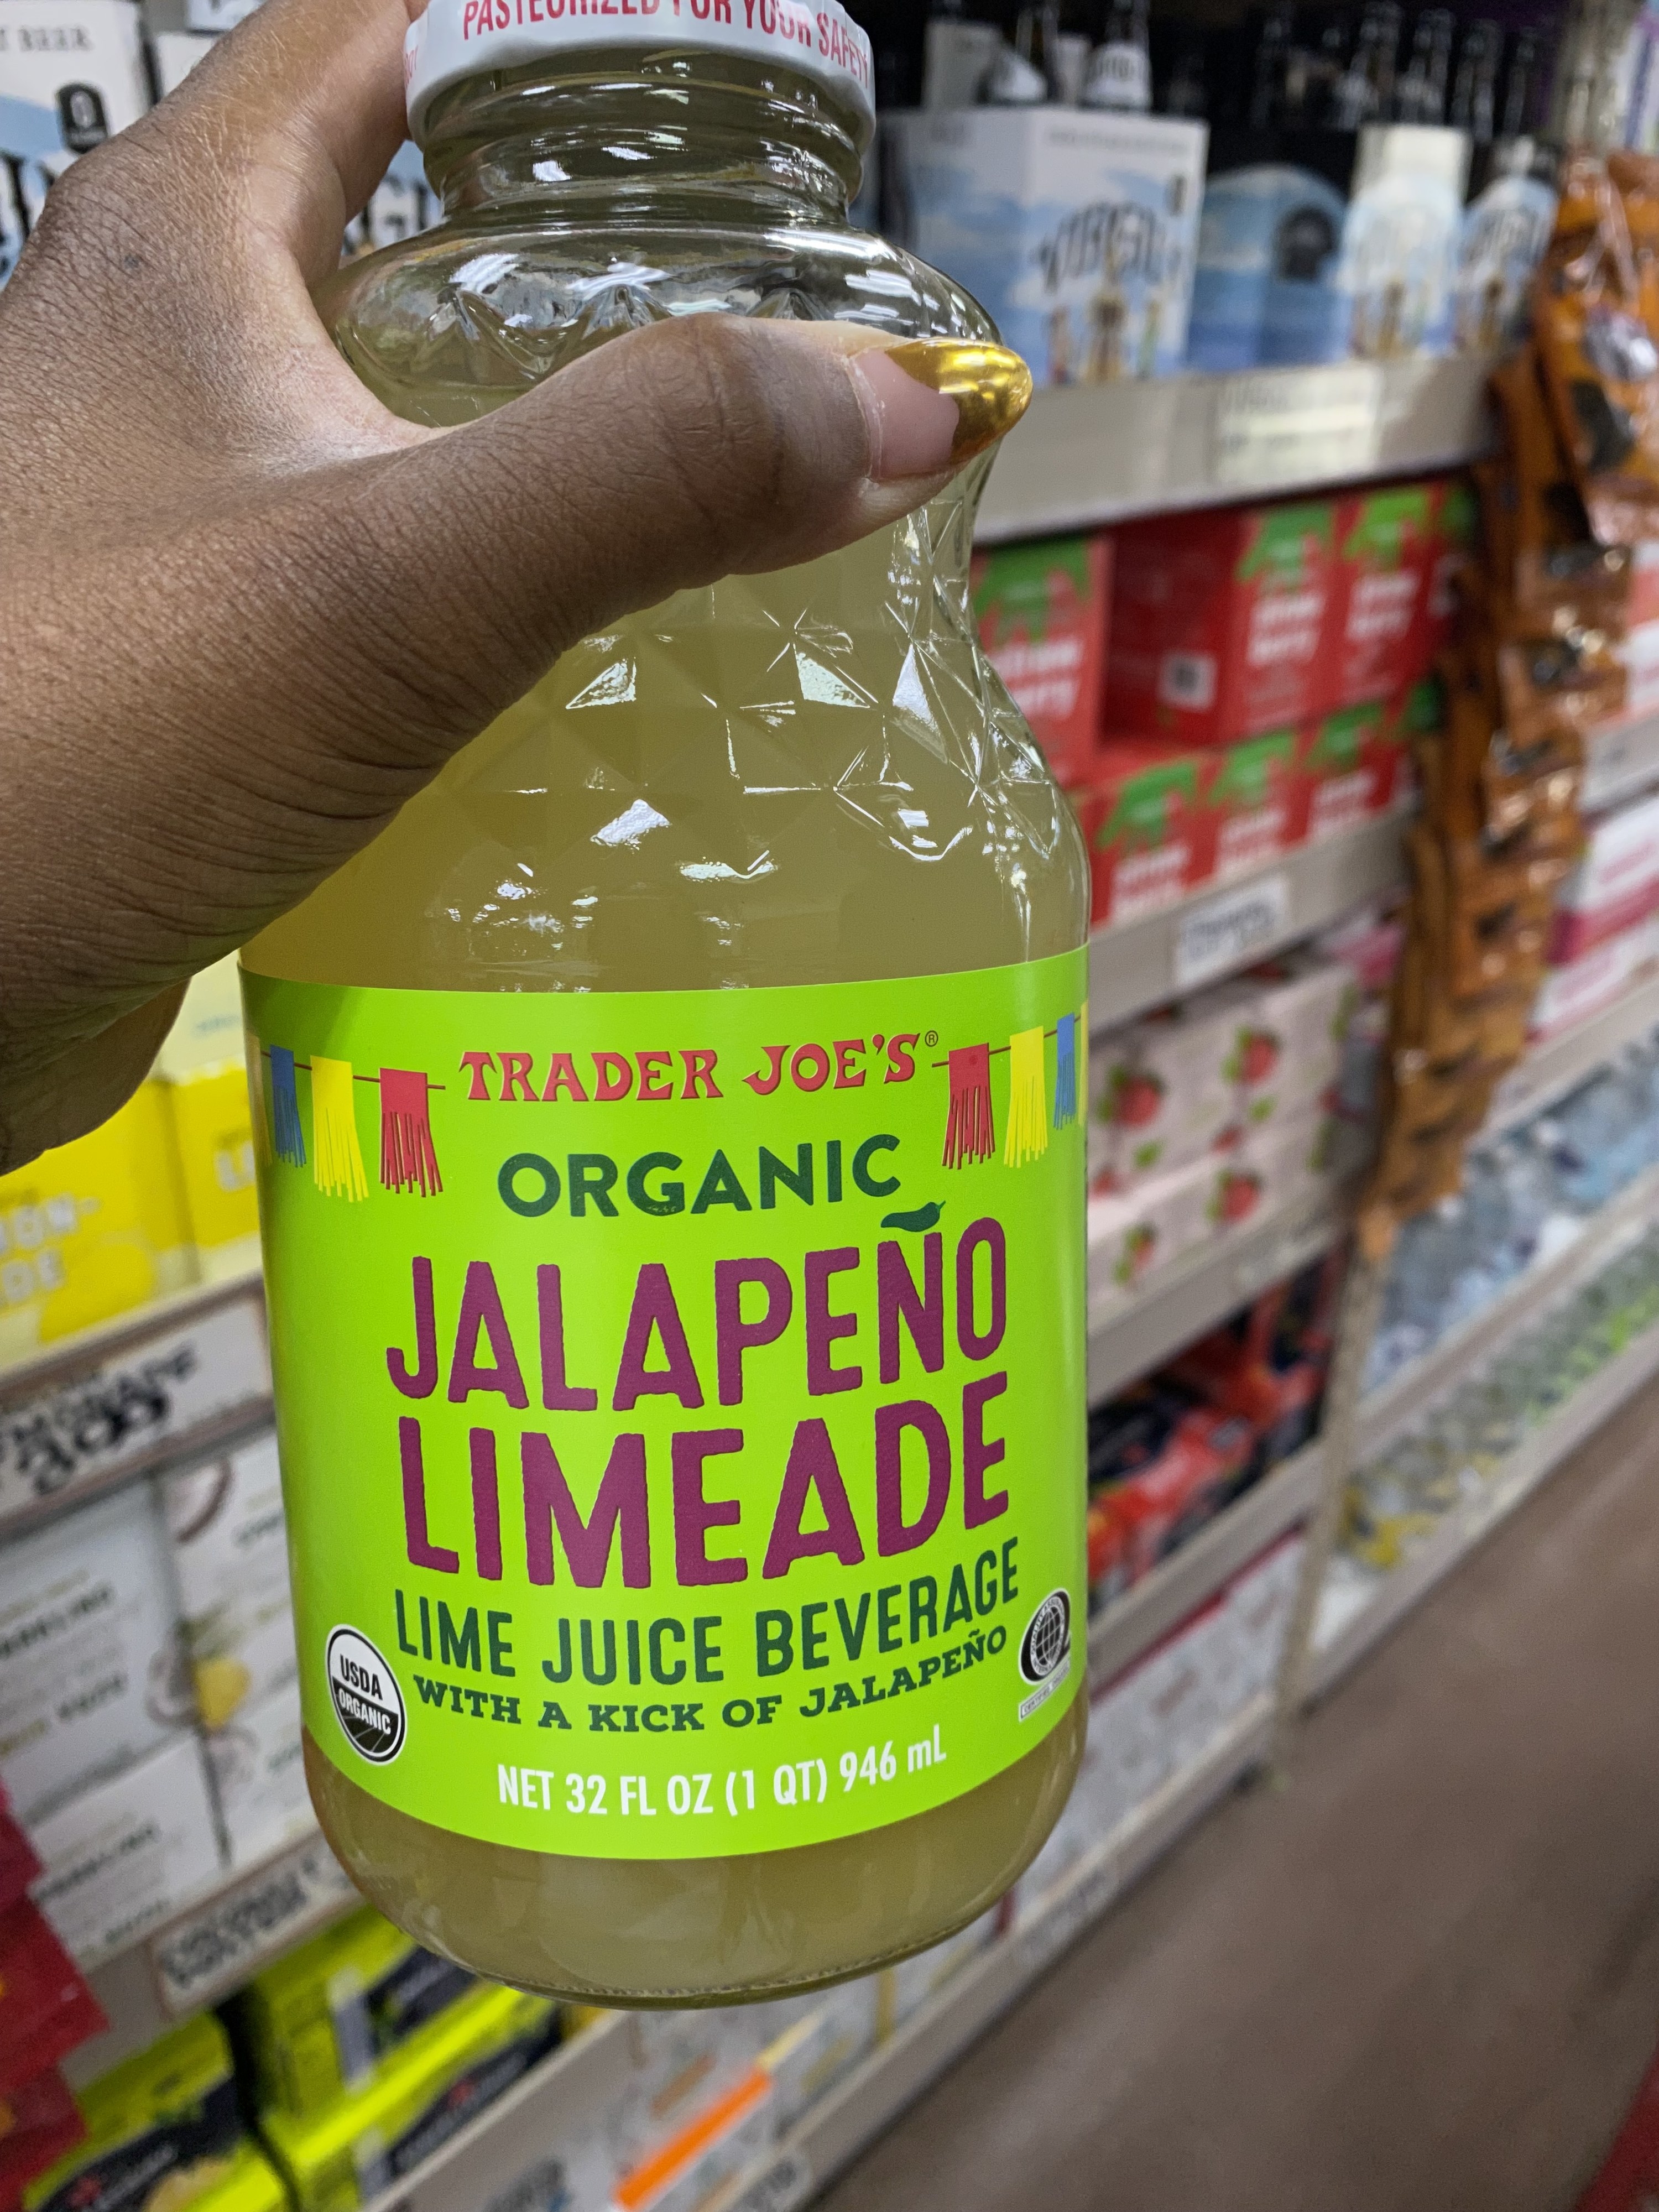 Bottle of Jalapeño limeade beverage